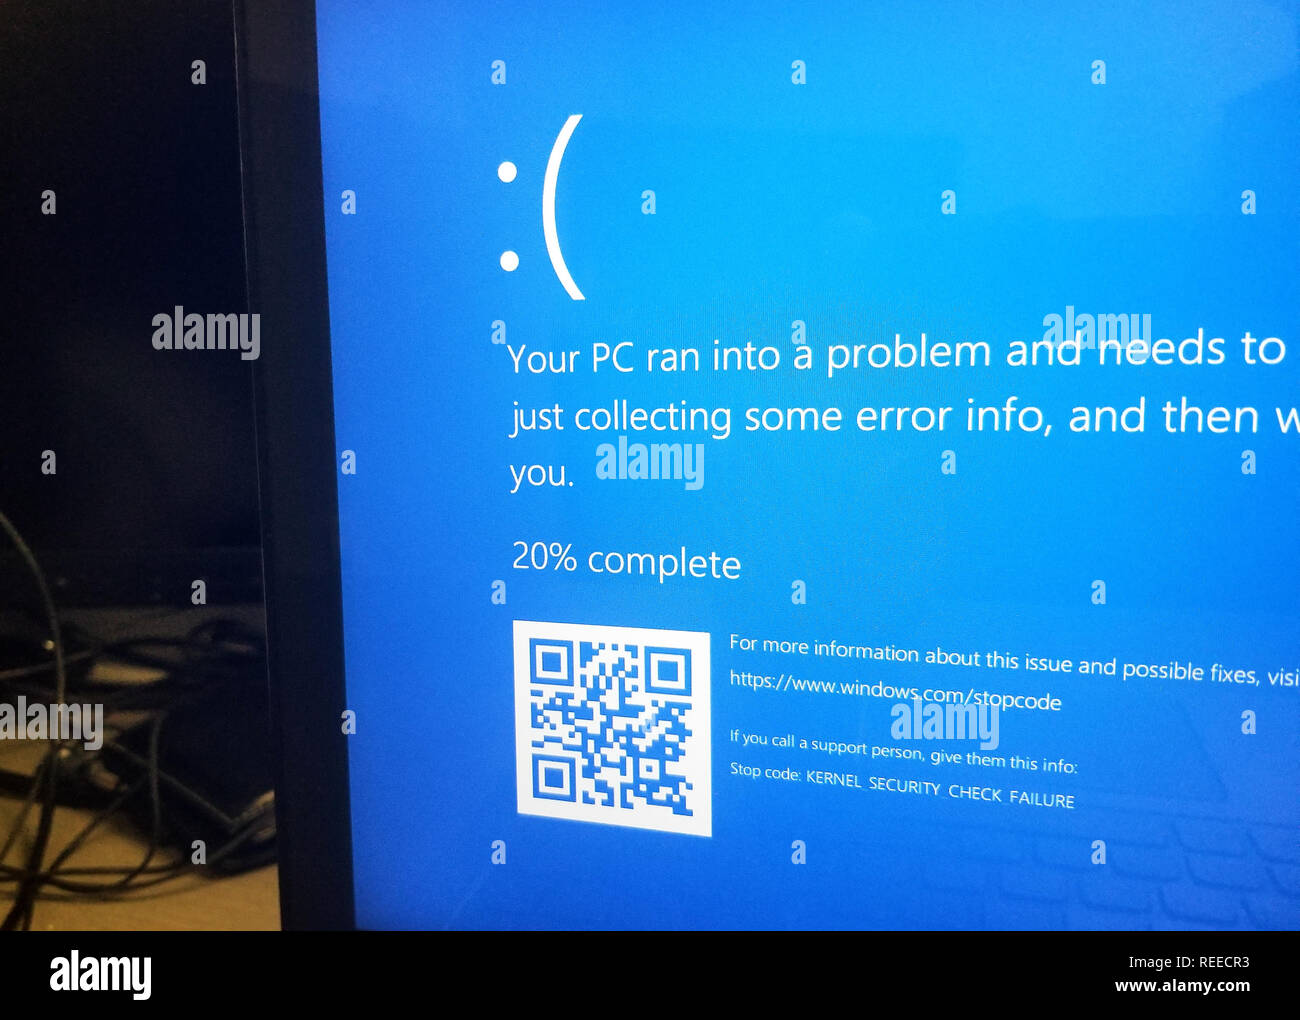 MONTREAL, KANADA - 10. MÄRZ 2018: Microsoft Windows 10 blaue Bildschirm des Todes auf einem Display. Microsoft Windows 10 ist ein beliebtes Betriebssystem für Pers Stockfoto